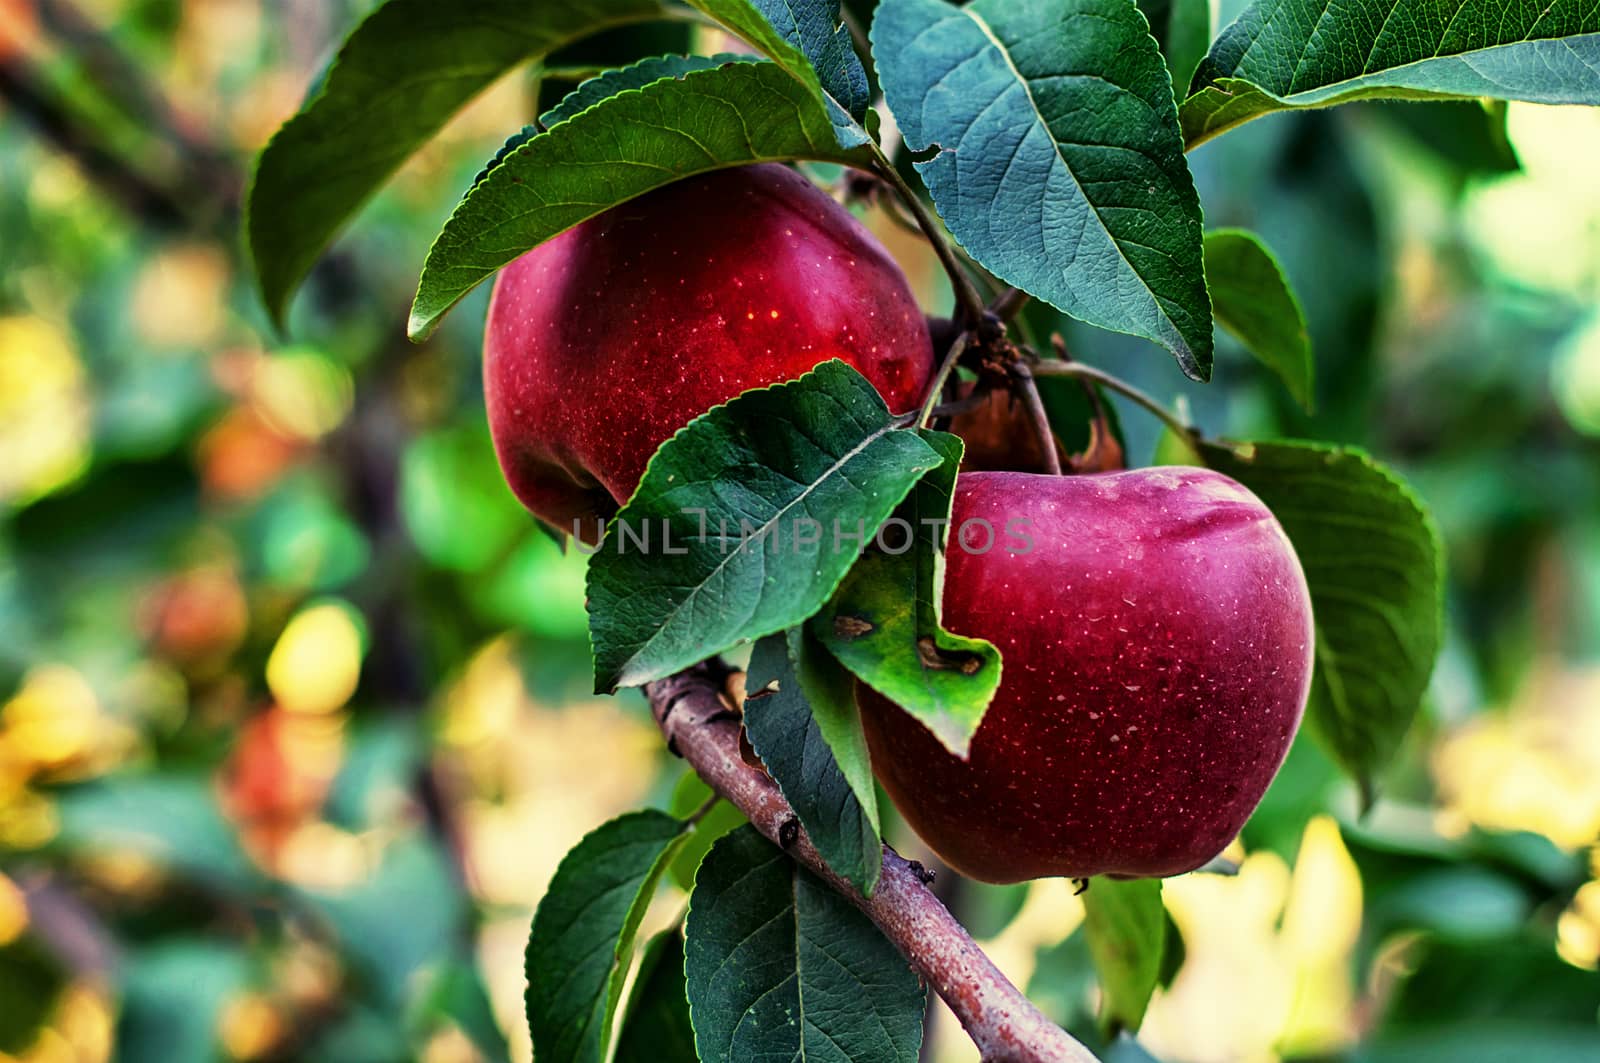 harvested crop rustic apples  by LMykola